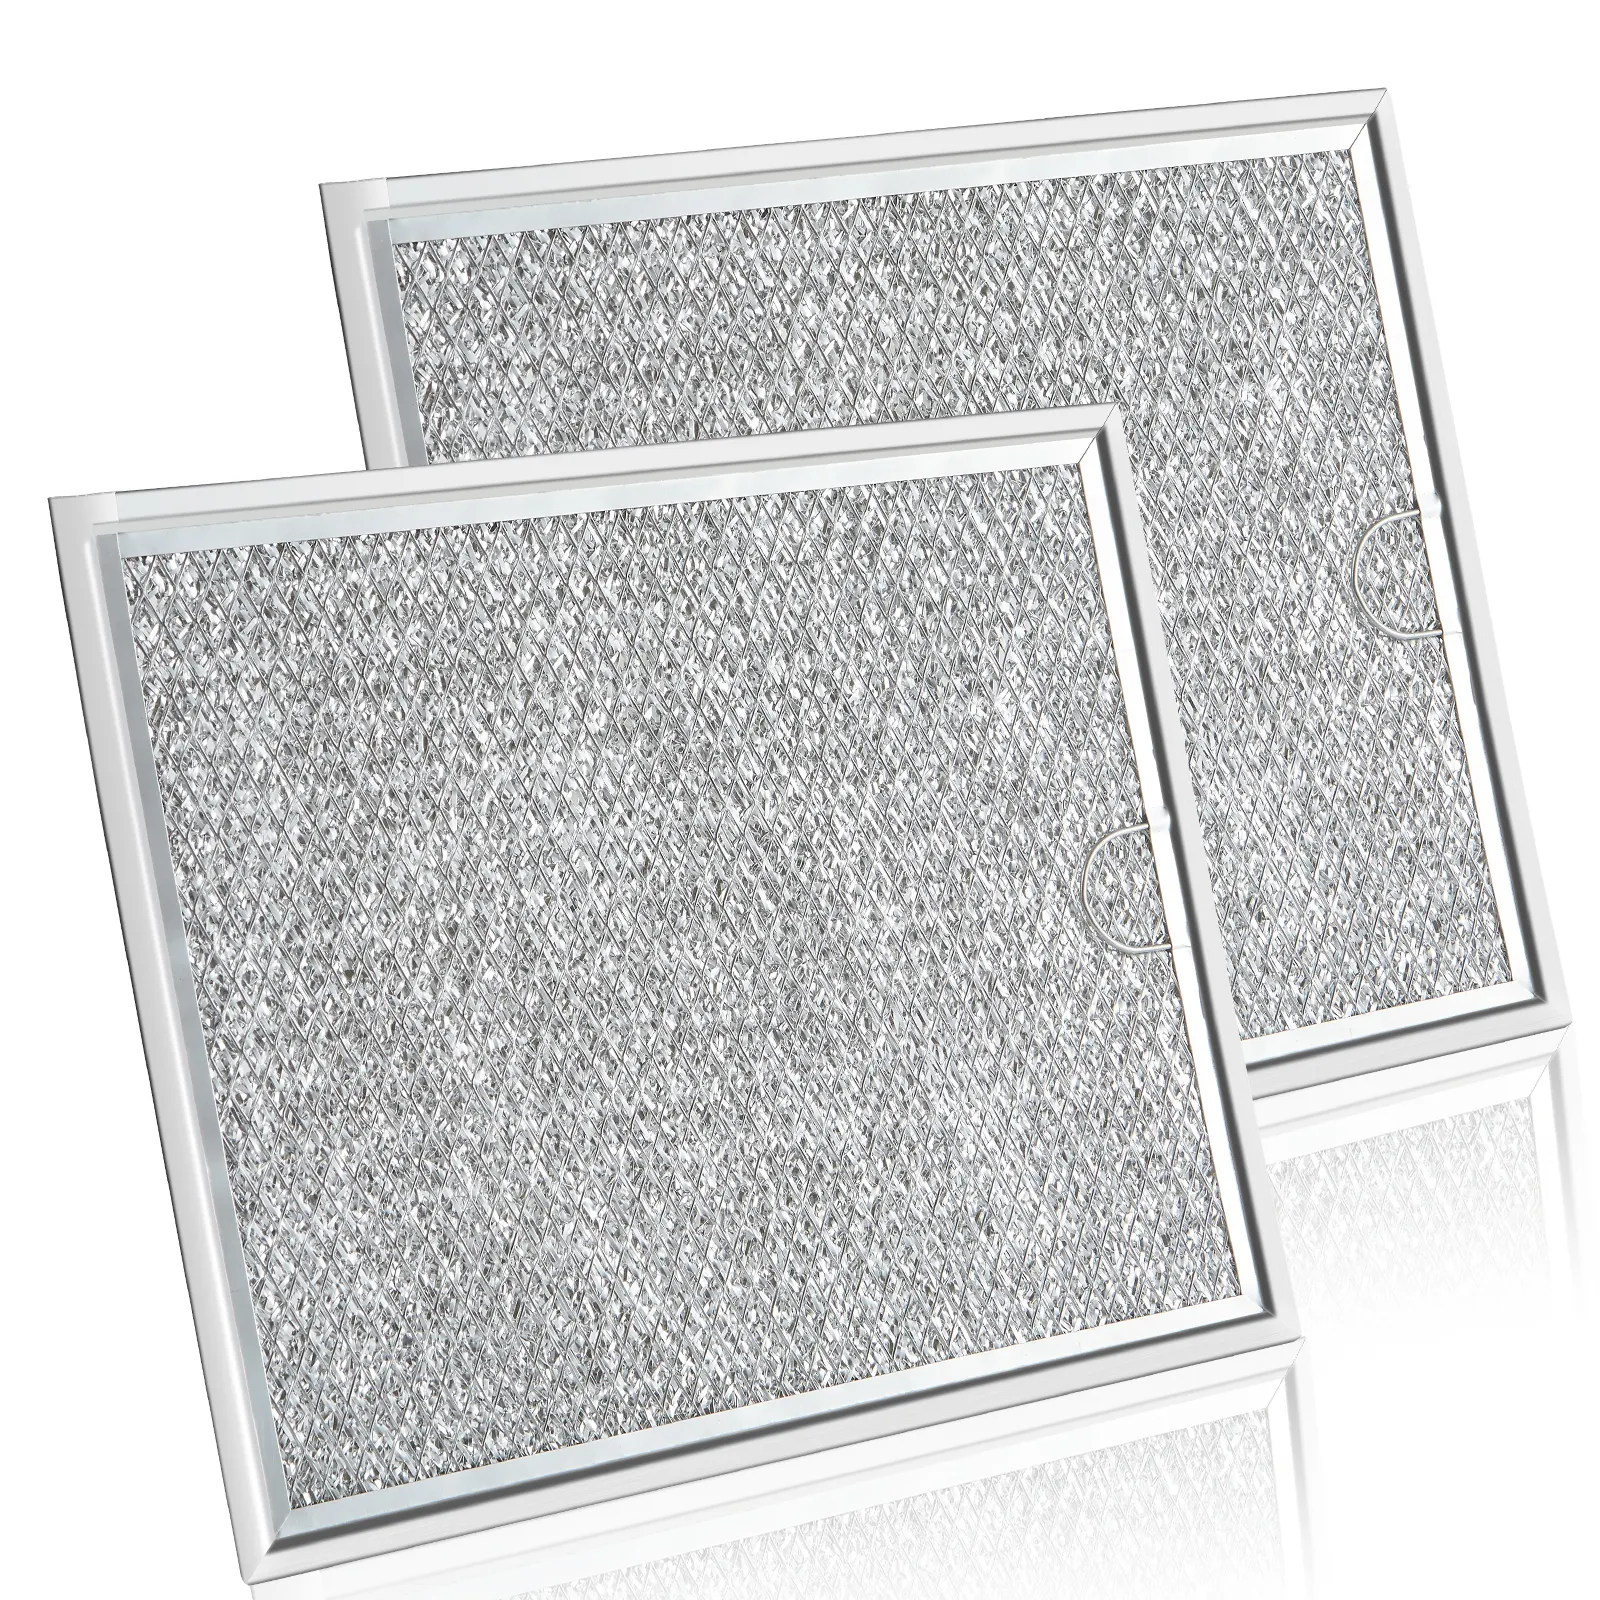 7-5/8X5X3/32 pollici di ricambio del filtro a microonde in alluminio a rete filtro grasso per forno a microonde